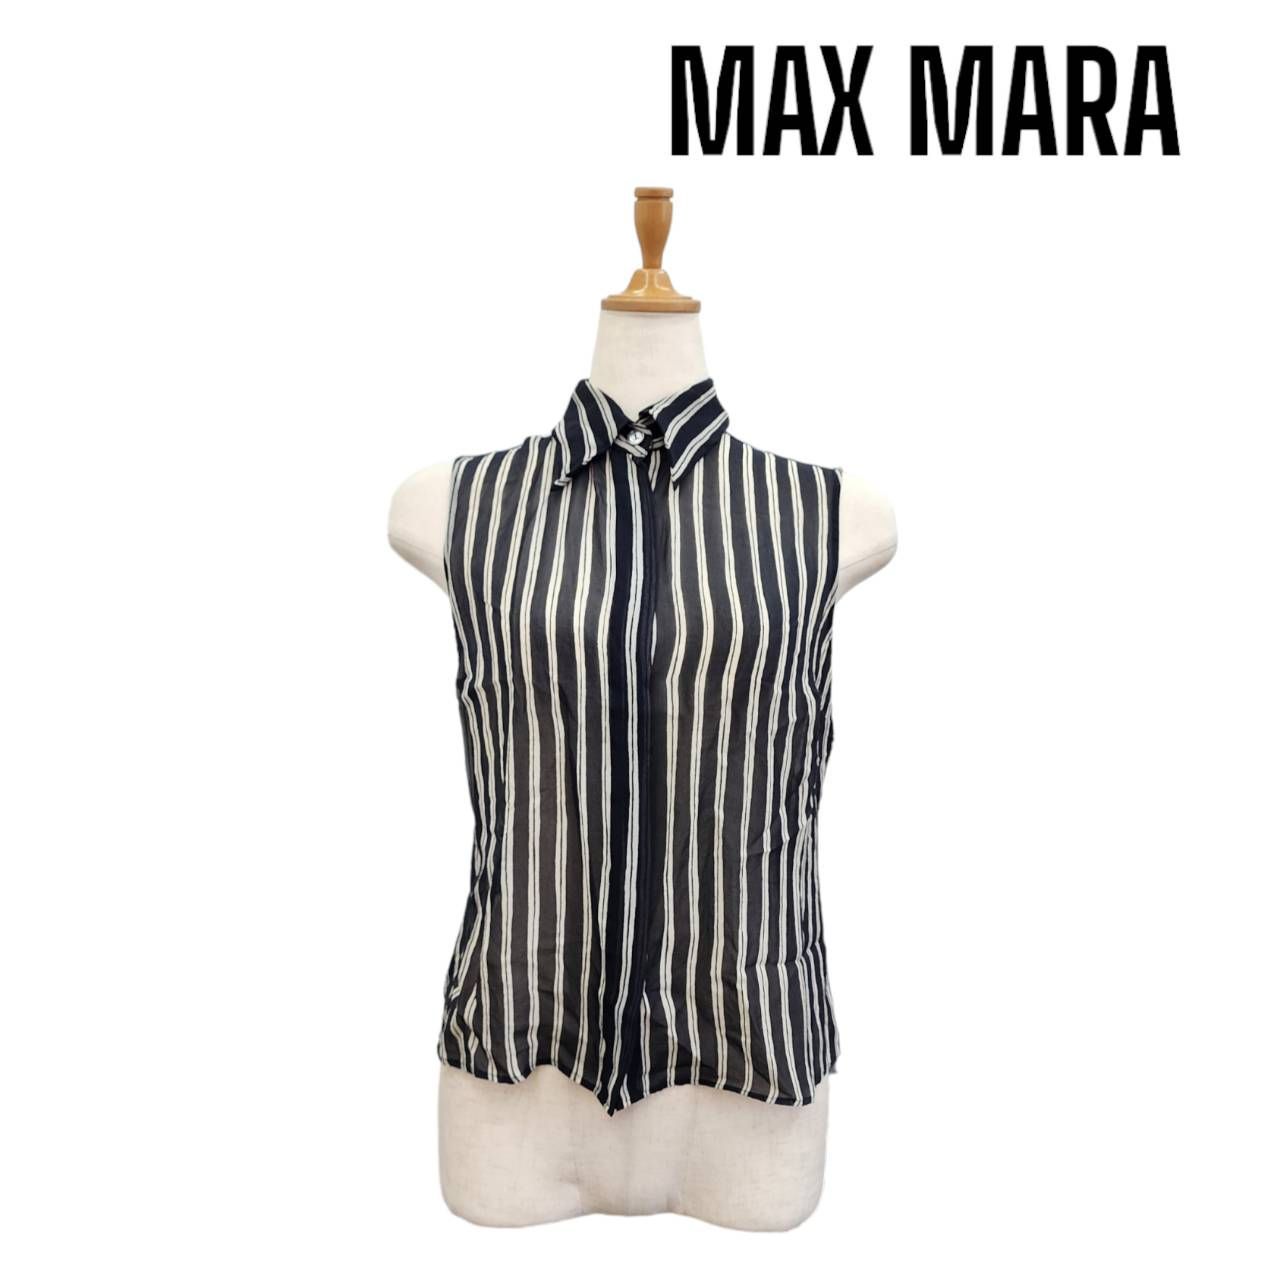 MAX MARA マックスマーラ ノースリーブ シアー ブラウス ストライプ ブラック 襟付き ブランド アパレル トップス